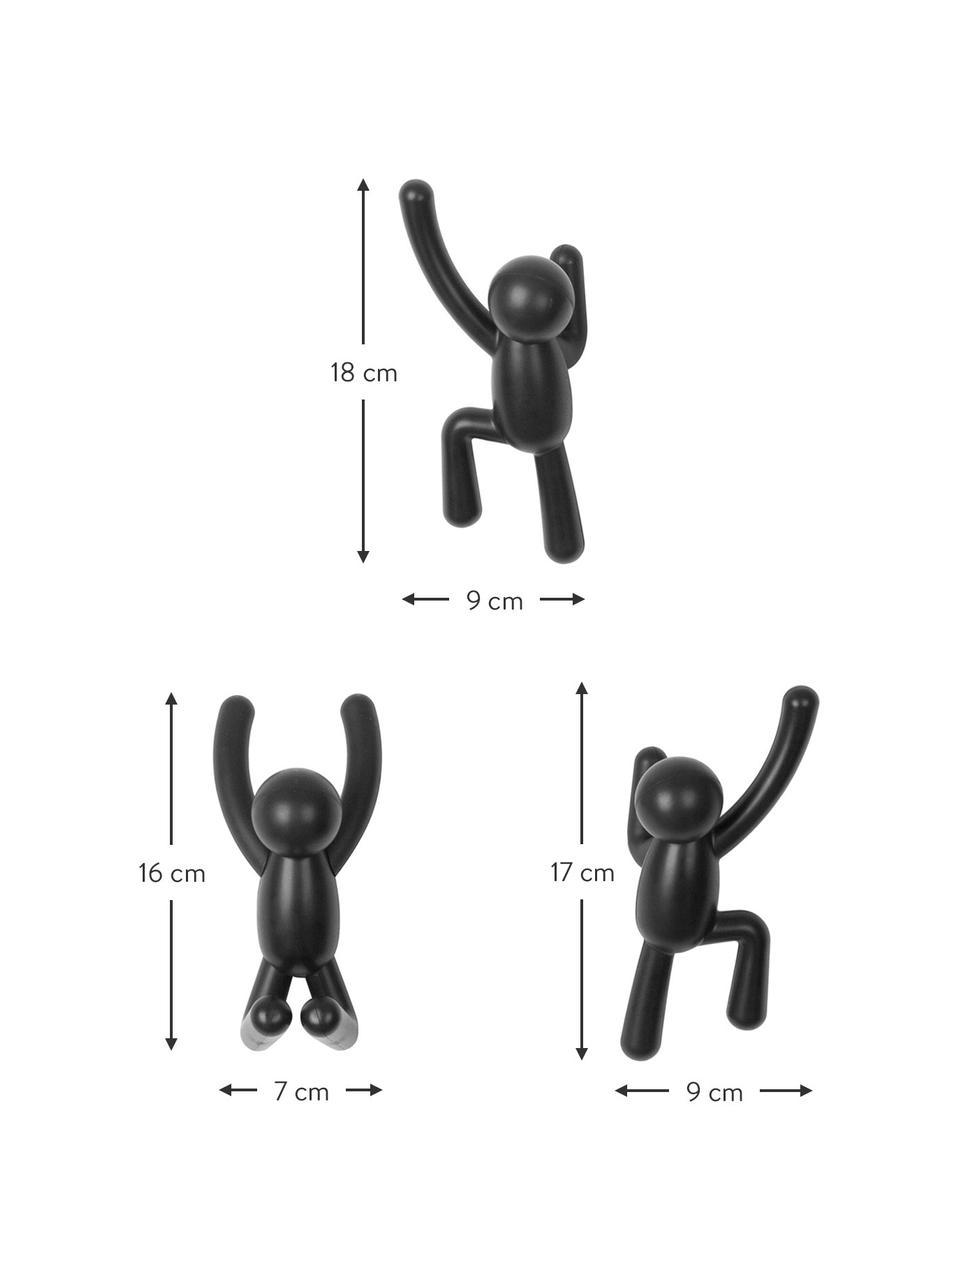 Komplet haków ściennych Buddy, 3 elem., Tworzywo sztuczne (ABS), Czarny, Komplet z różnymi rozmiarami